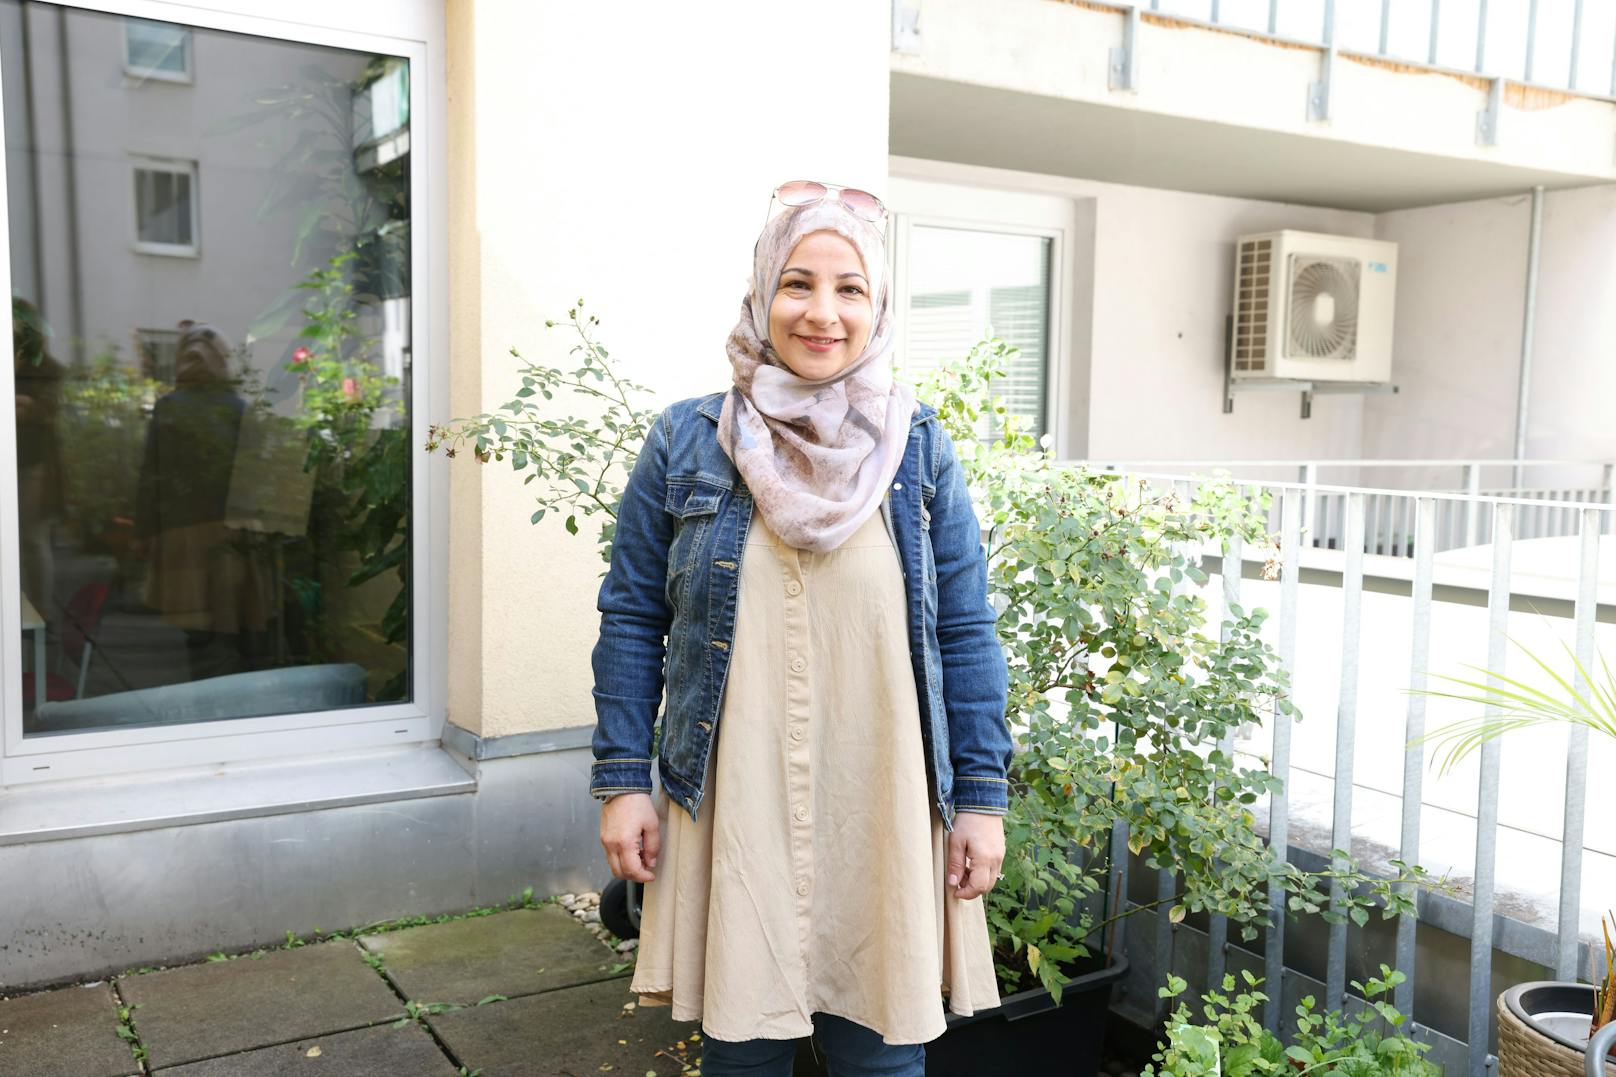 Vor allem für Migranten bedeutet die Frage "Impfung ja oder nein" viel Unsicherheit. Um hier in der jeweiligen Muttersprache zu beraten, sind in Wien derzeit rund 60 Gesundheitslots*innen unterwegs. "Heute" hat mit Fatima Keblawi (40) eine zum Gespräch getroffen.